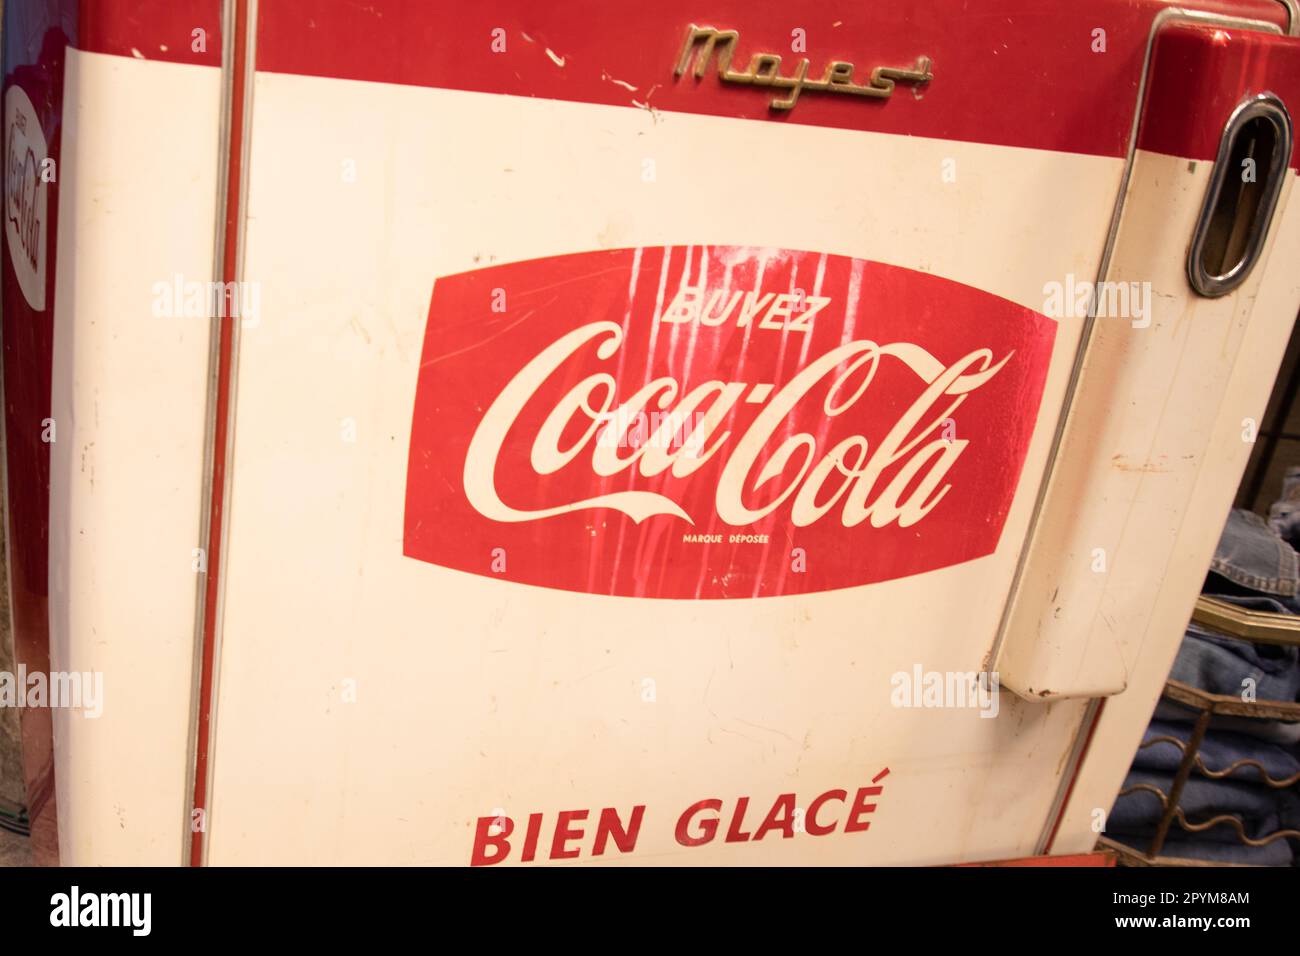 Wie heißt dieser Kühlschrank? (Coca-Cola, modellnummer)